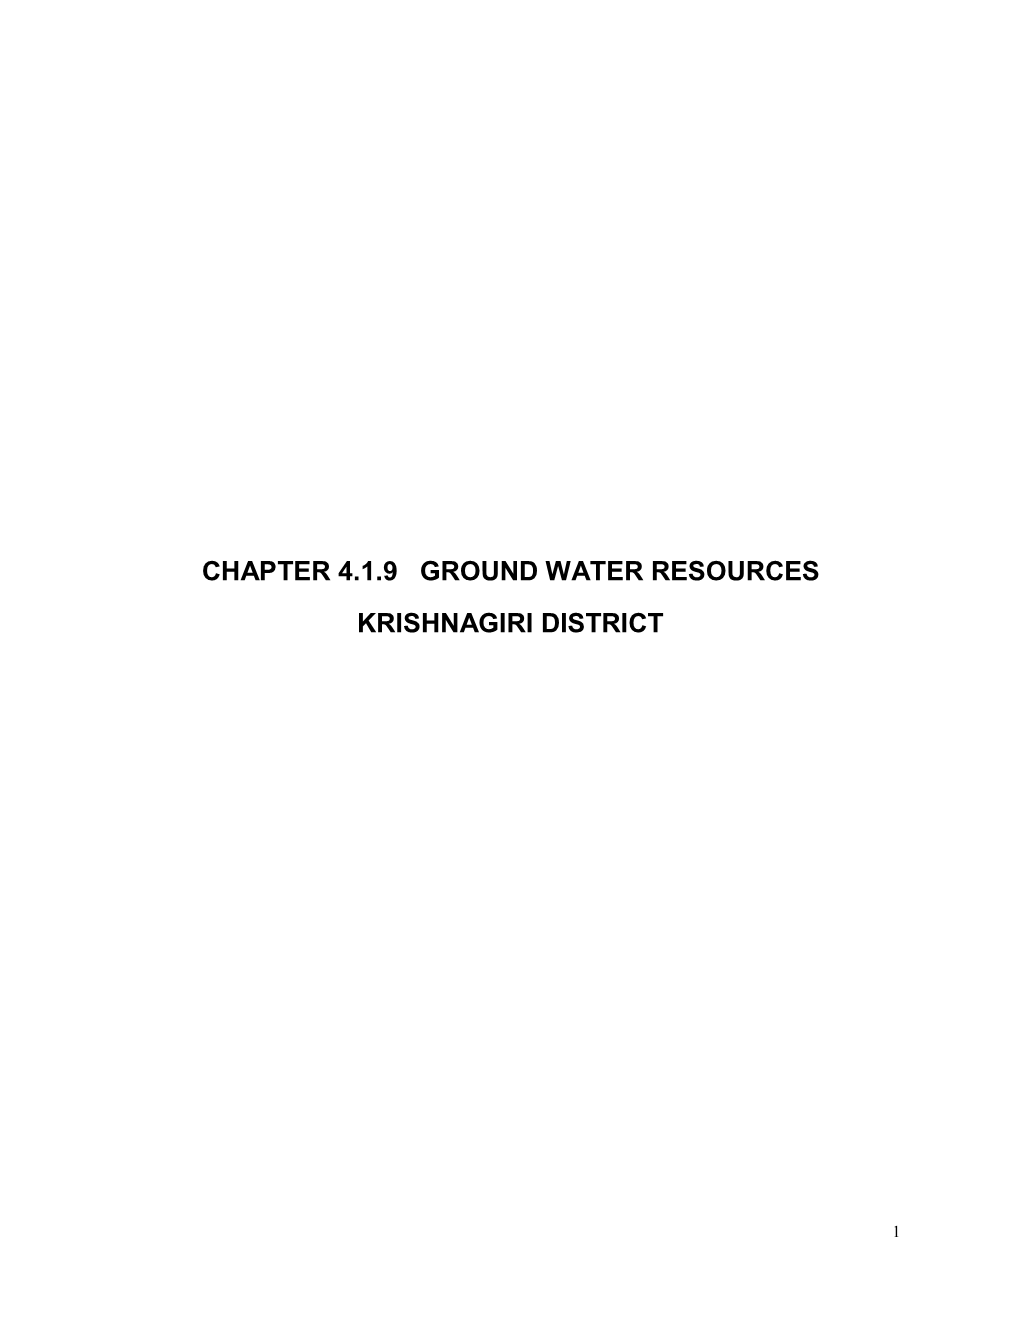 Chapter 4.1.9 Ground Water Resources Krishnagiri District